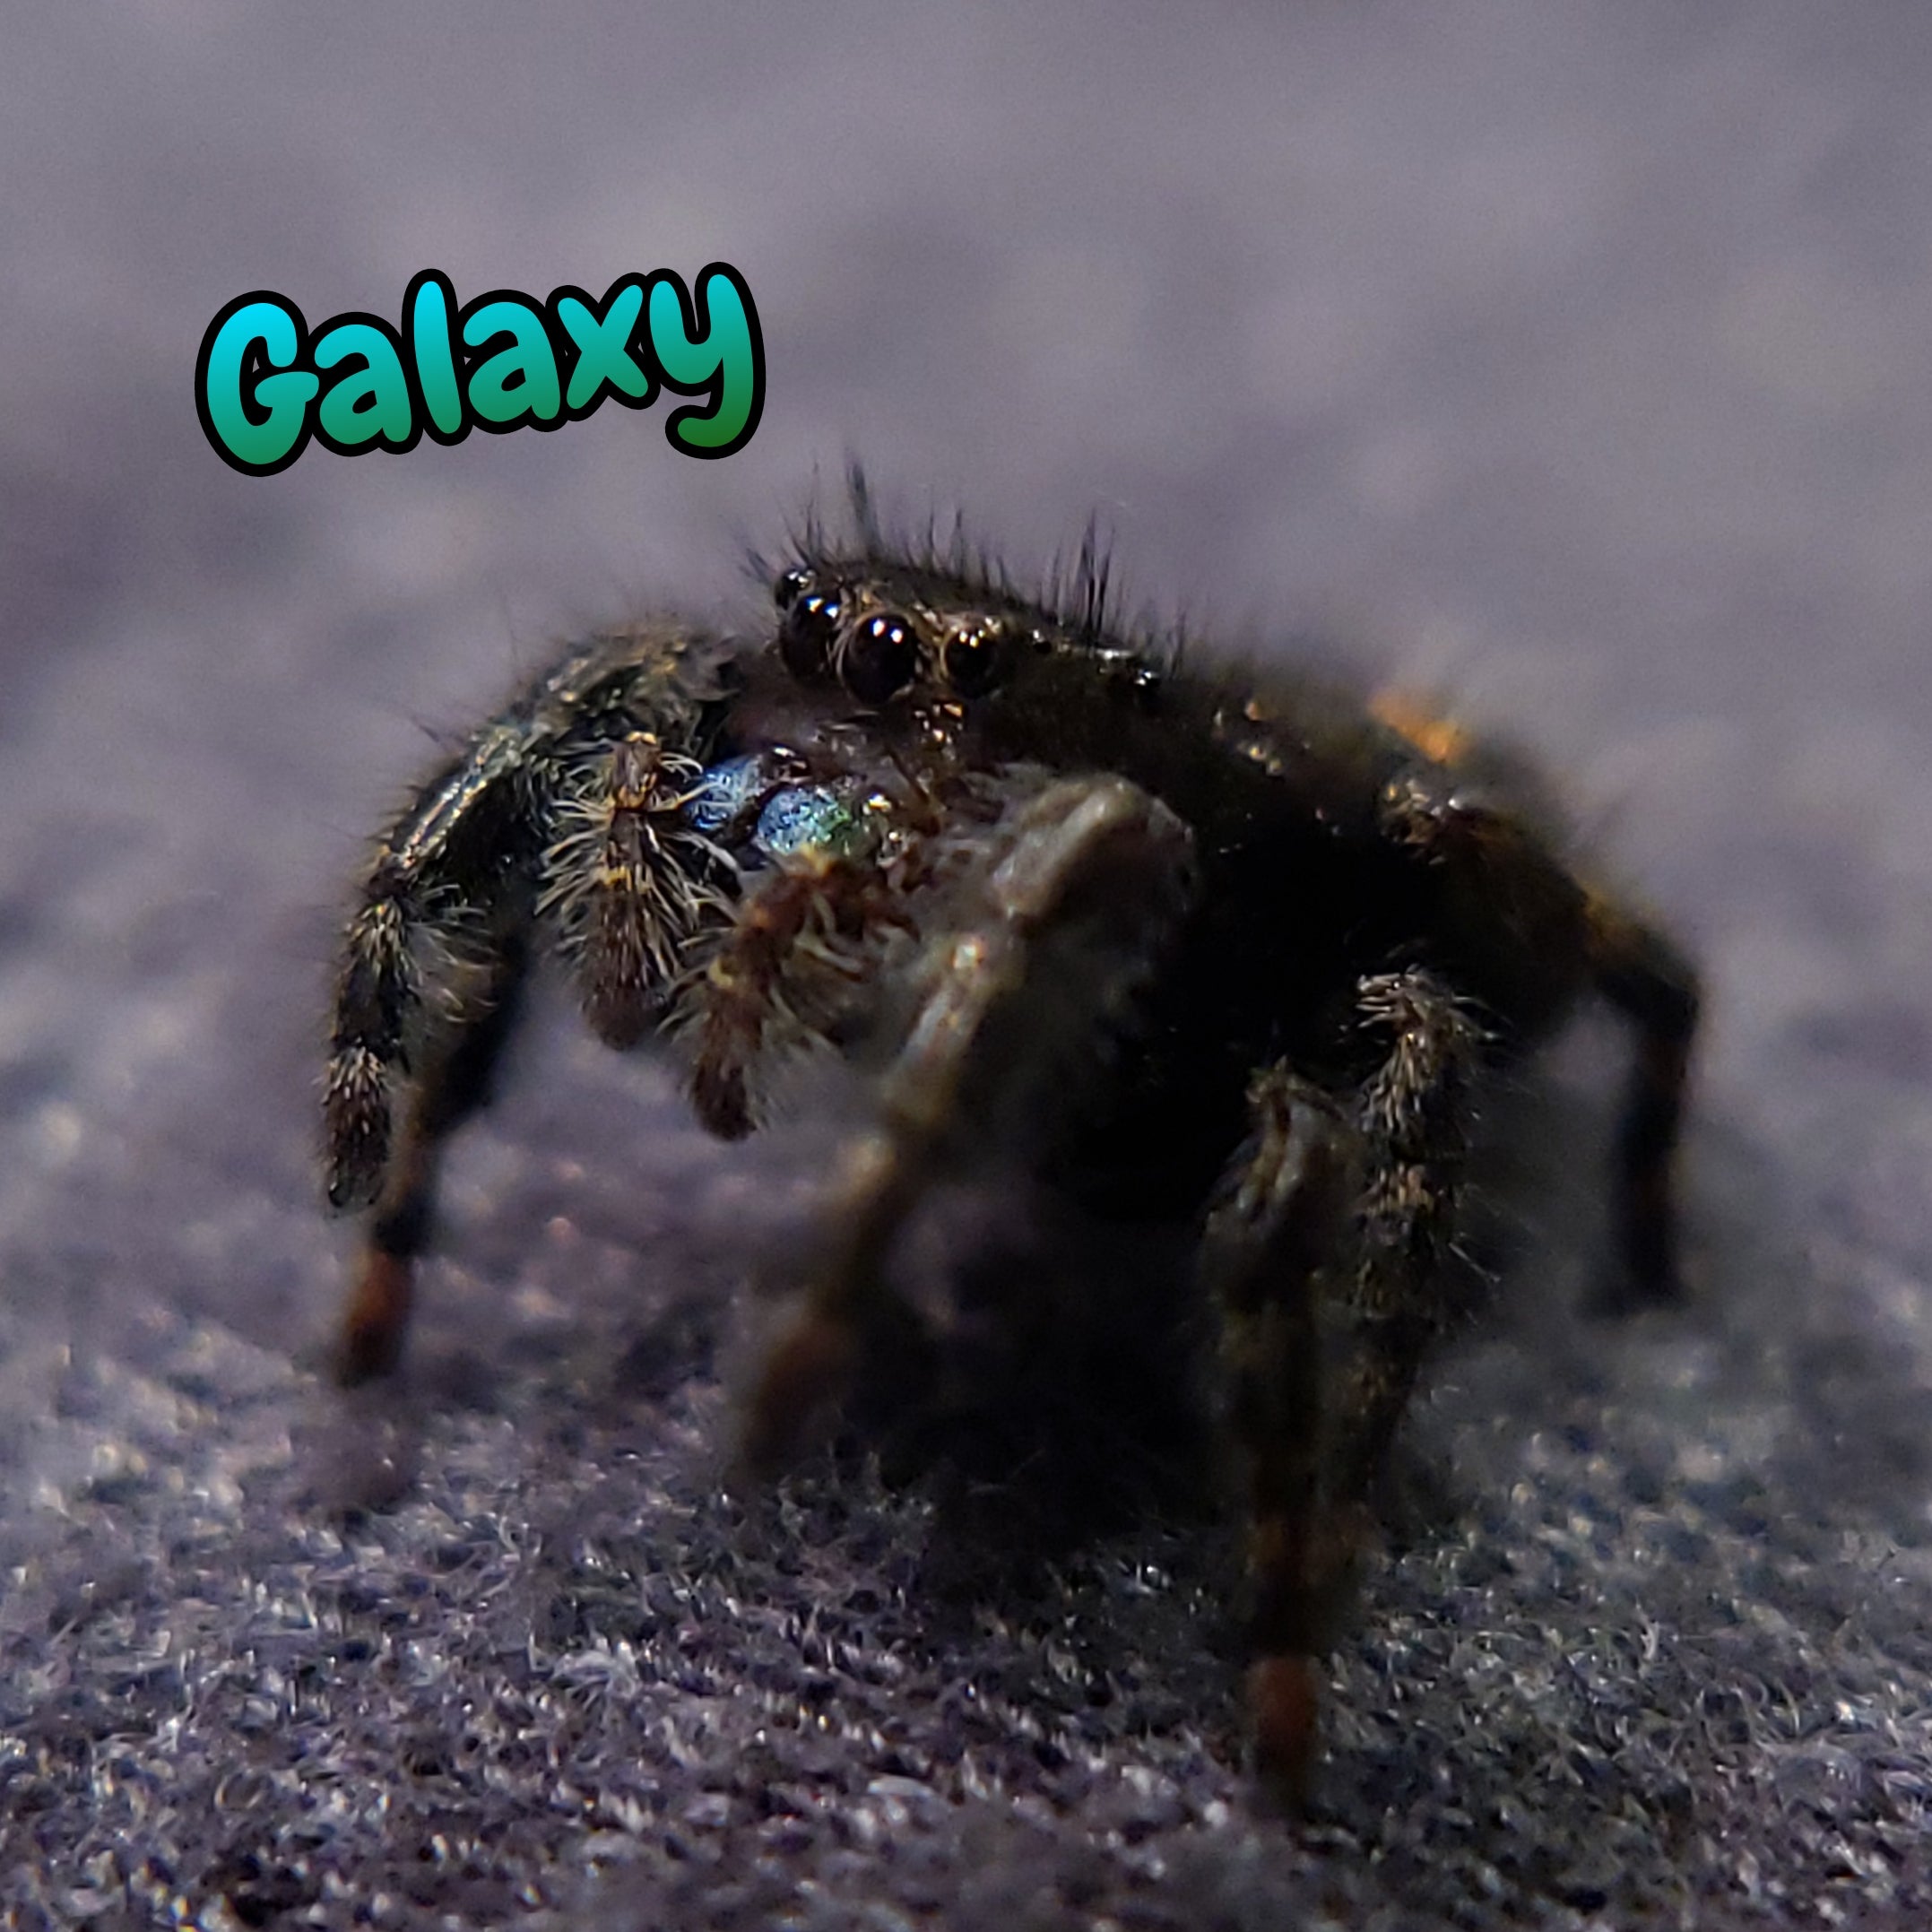 Audax Jumping Spider "Galaxy"